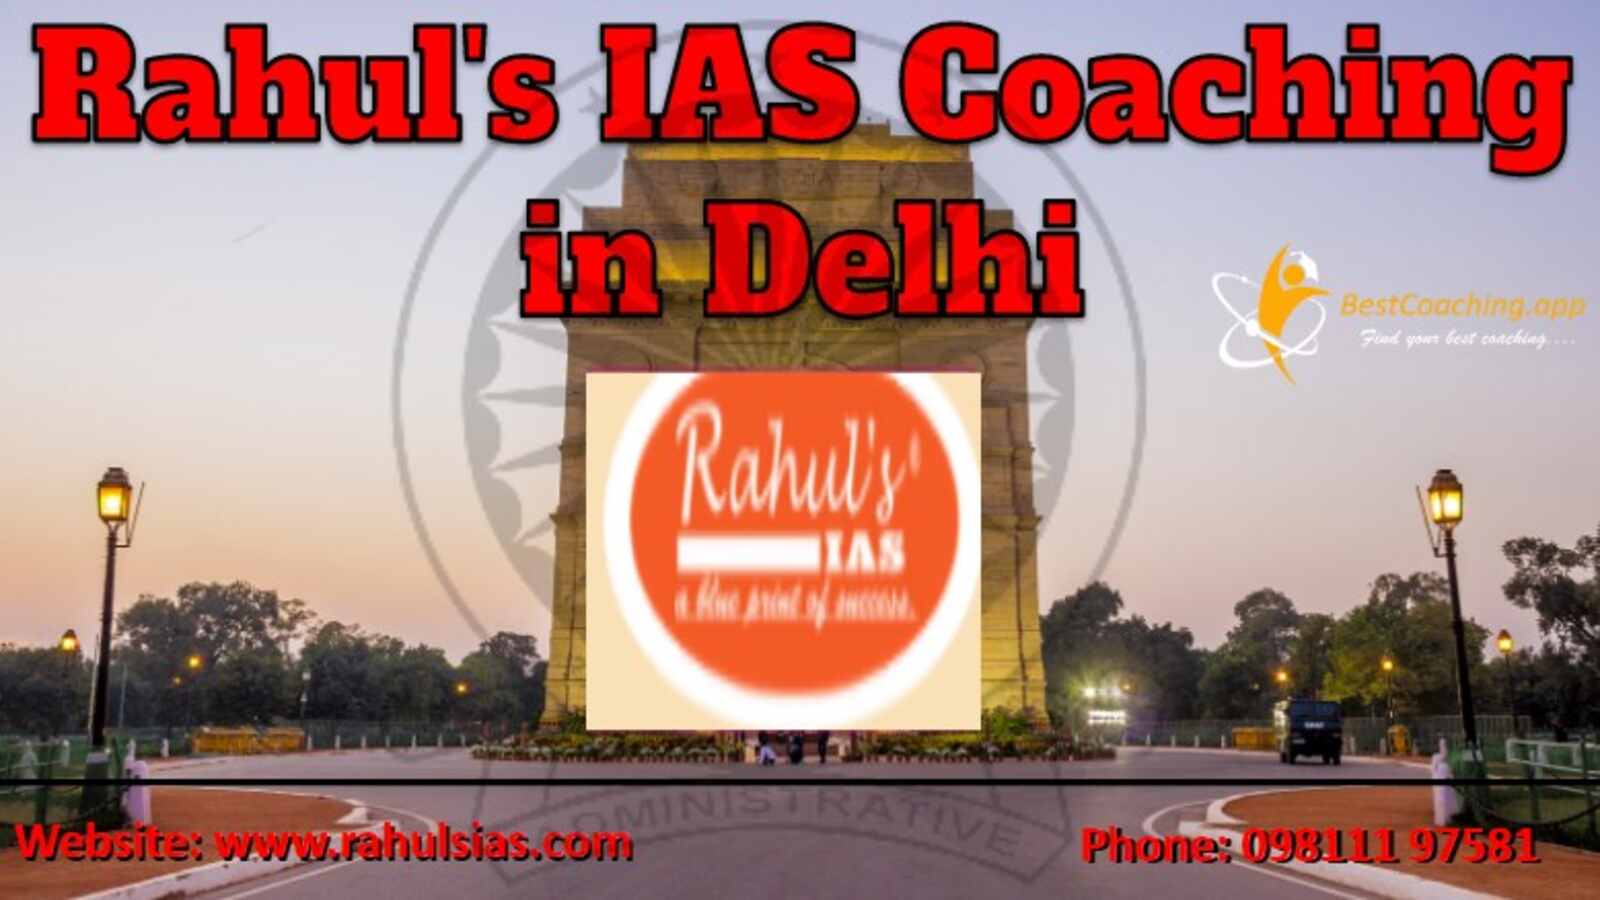 Rahul’s IAS Coaching in Delhi fees